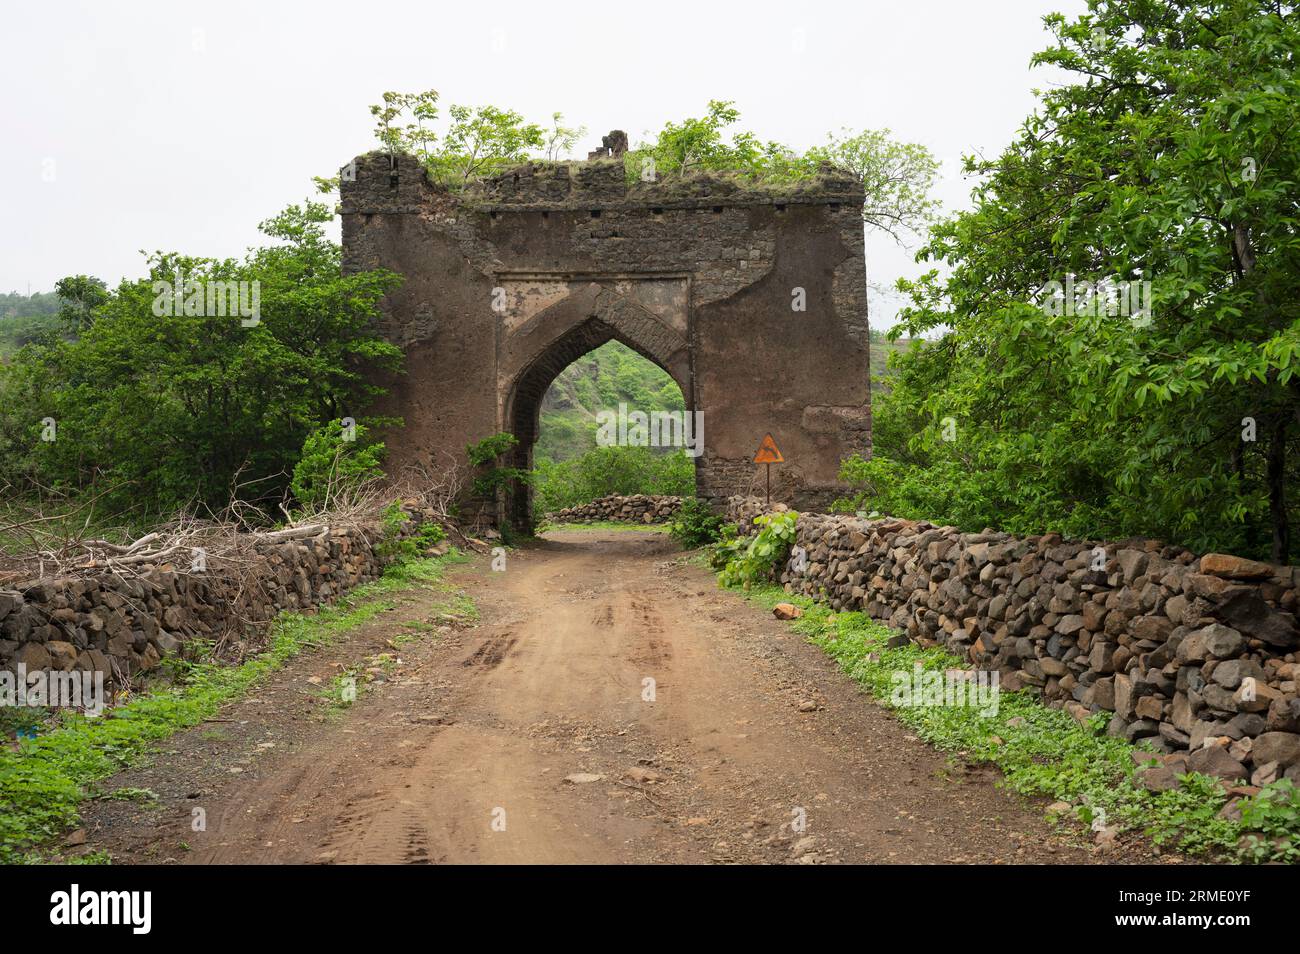 Ruins of an old darwaja, near Bhangi Darwaja, located in Mandu, Madhya Pradesh, India Stock Photo